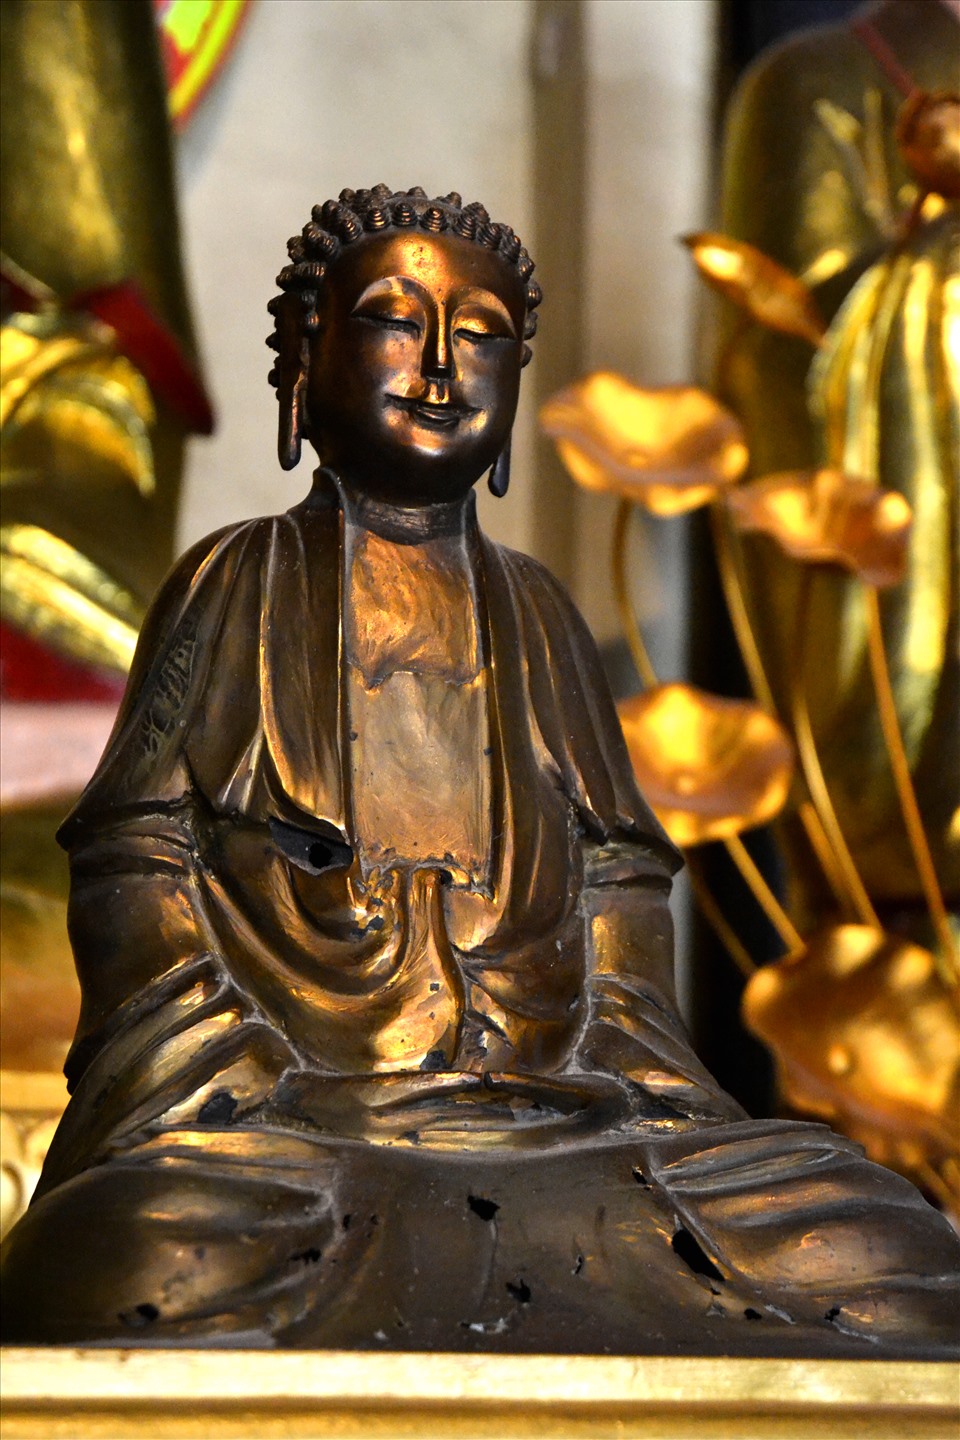 Pho tượng Phật Thích Ca Mâu Ni được bày trí tại Đại hùng bảo điện. Ảnh: LT